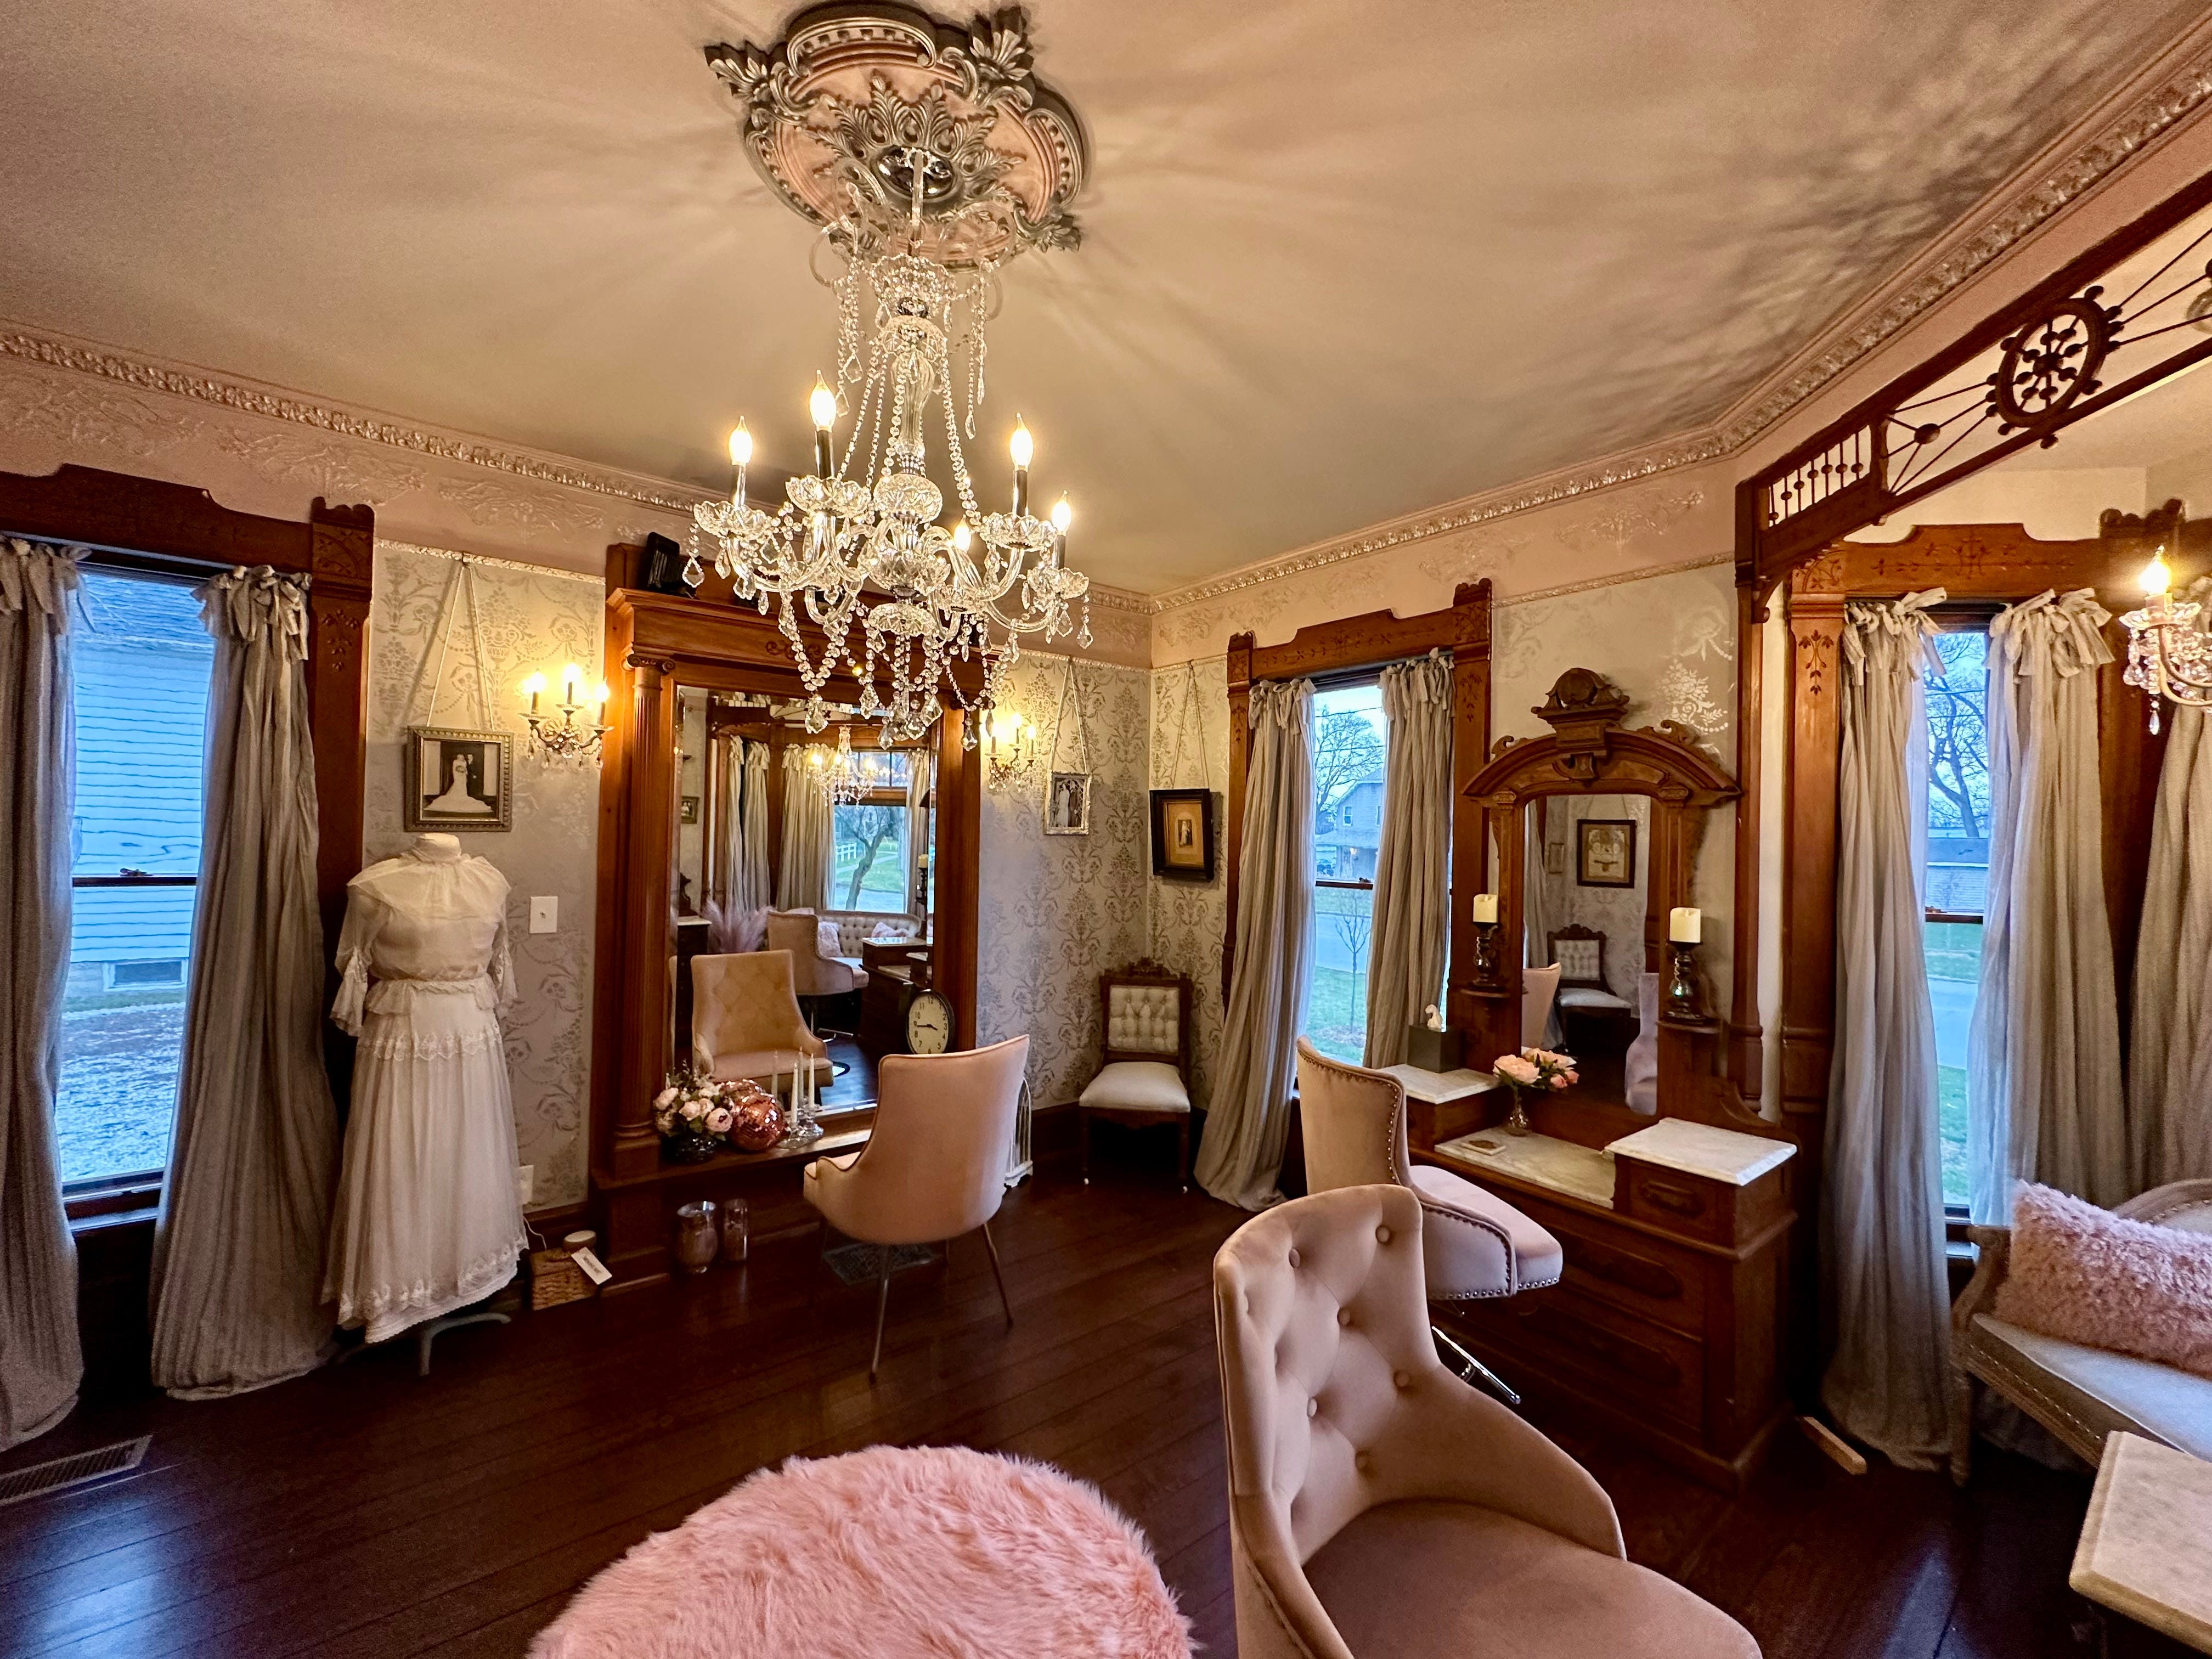 Ein Salon, der mit ausgefallenen Möbeln eingerichtet ist, darunter ein Kronleuchter, gemusterte Tapeten und Holzmöbel.